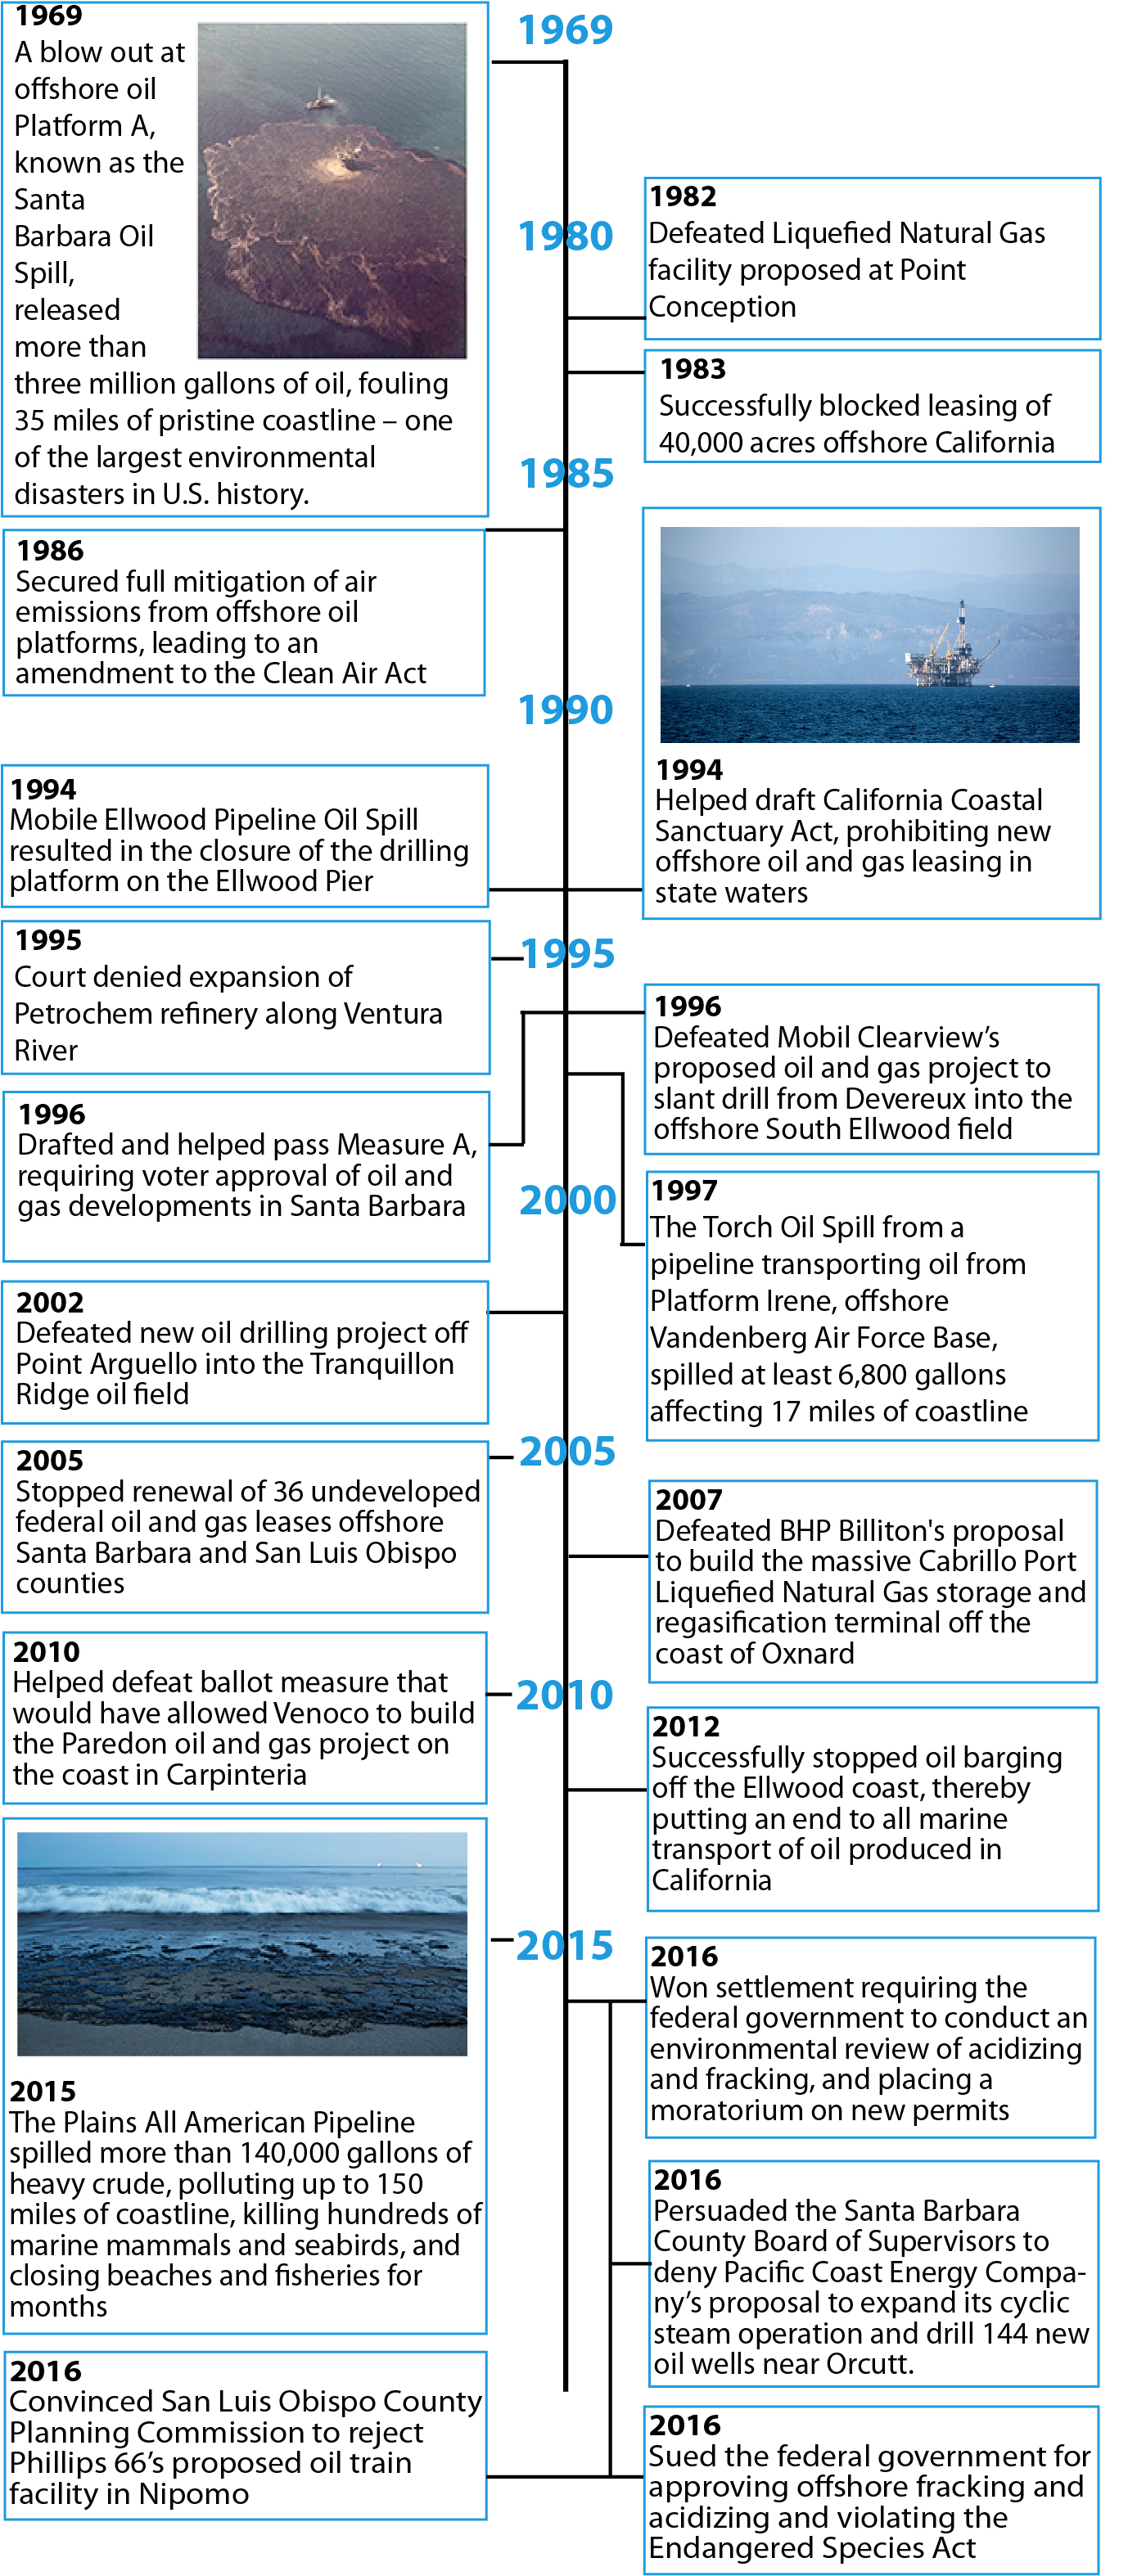 Oil Spill Anniv Email Timeline